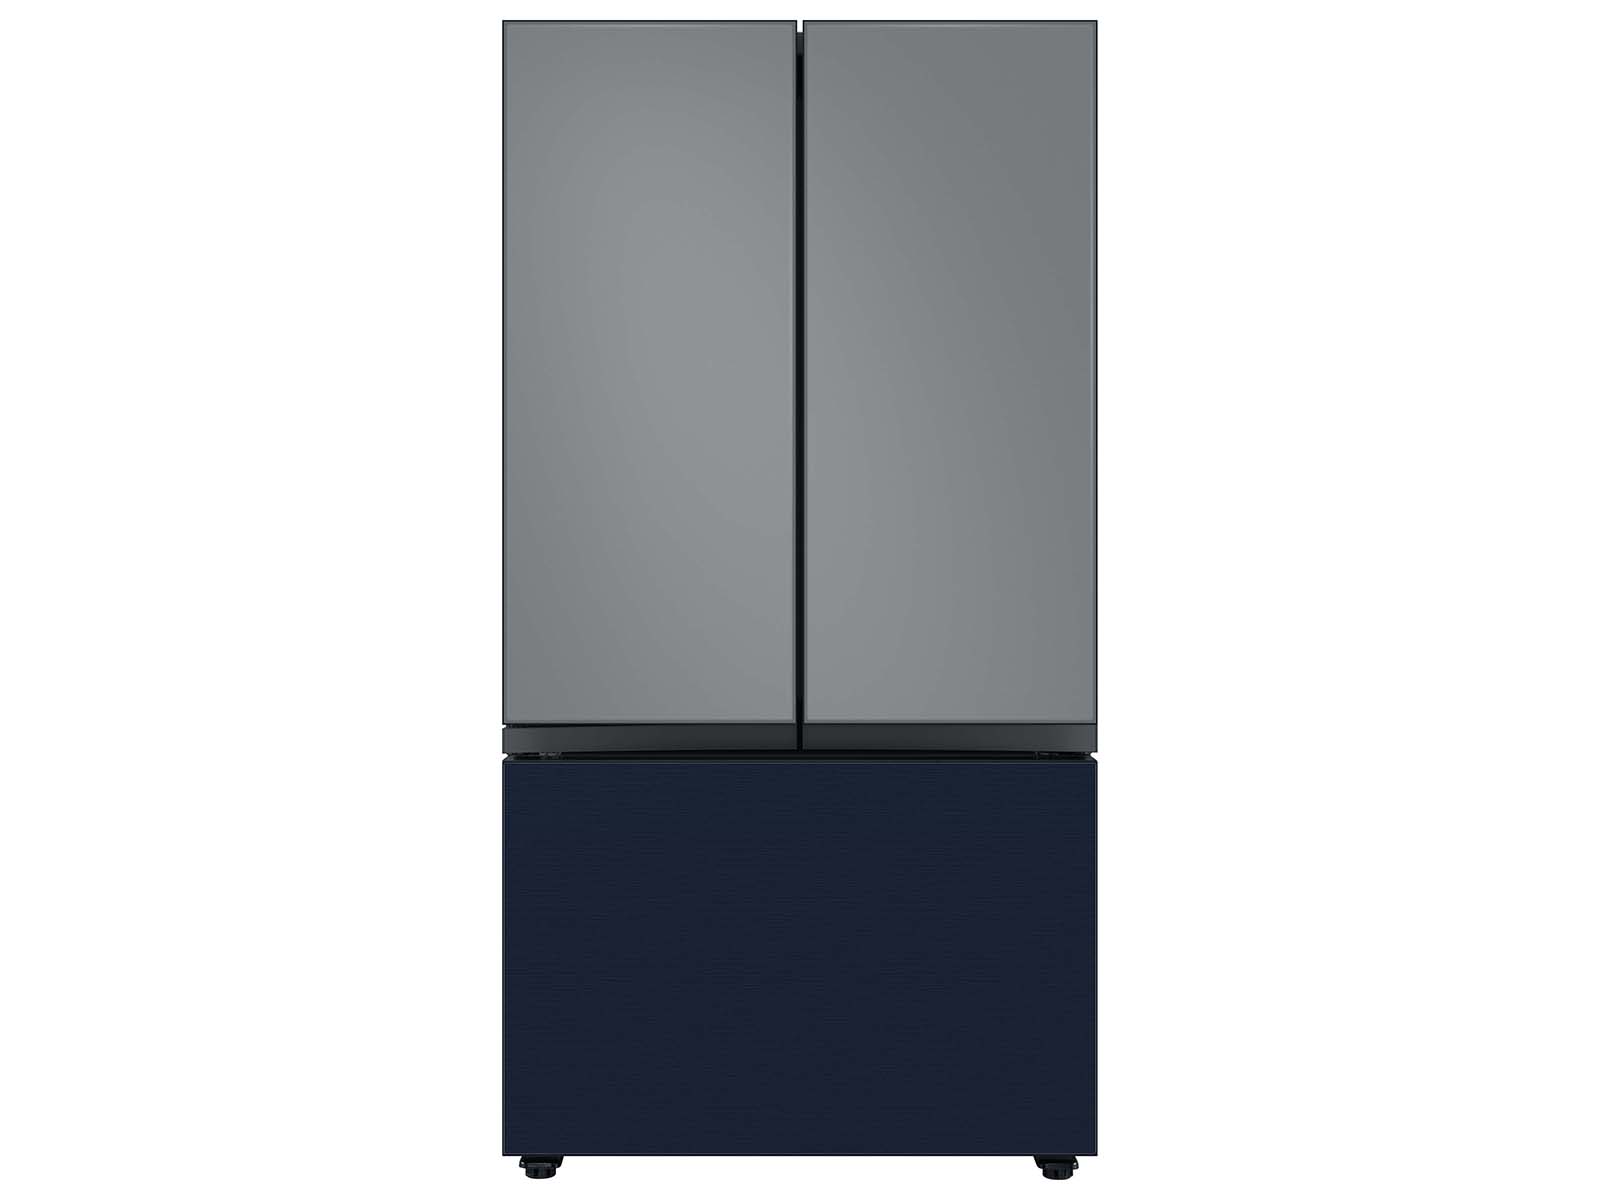 Thumbnail image of Bespoke 3-Door French Door Refrigerator Panel in Navy Steel - Bottom Panel